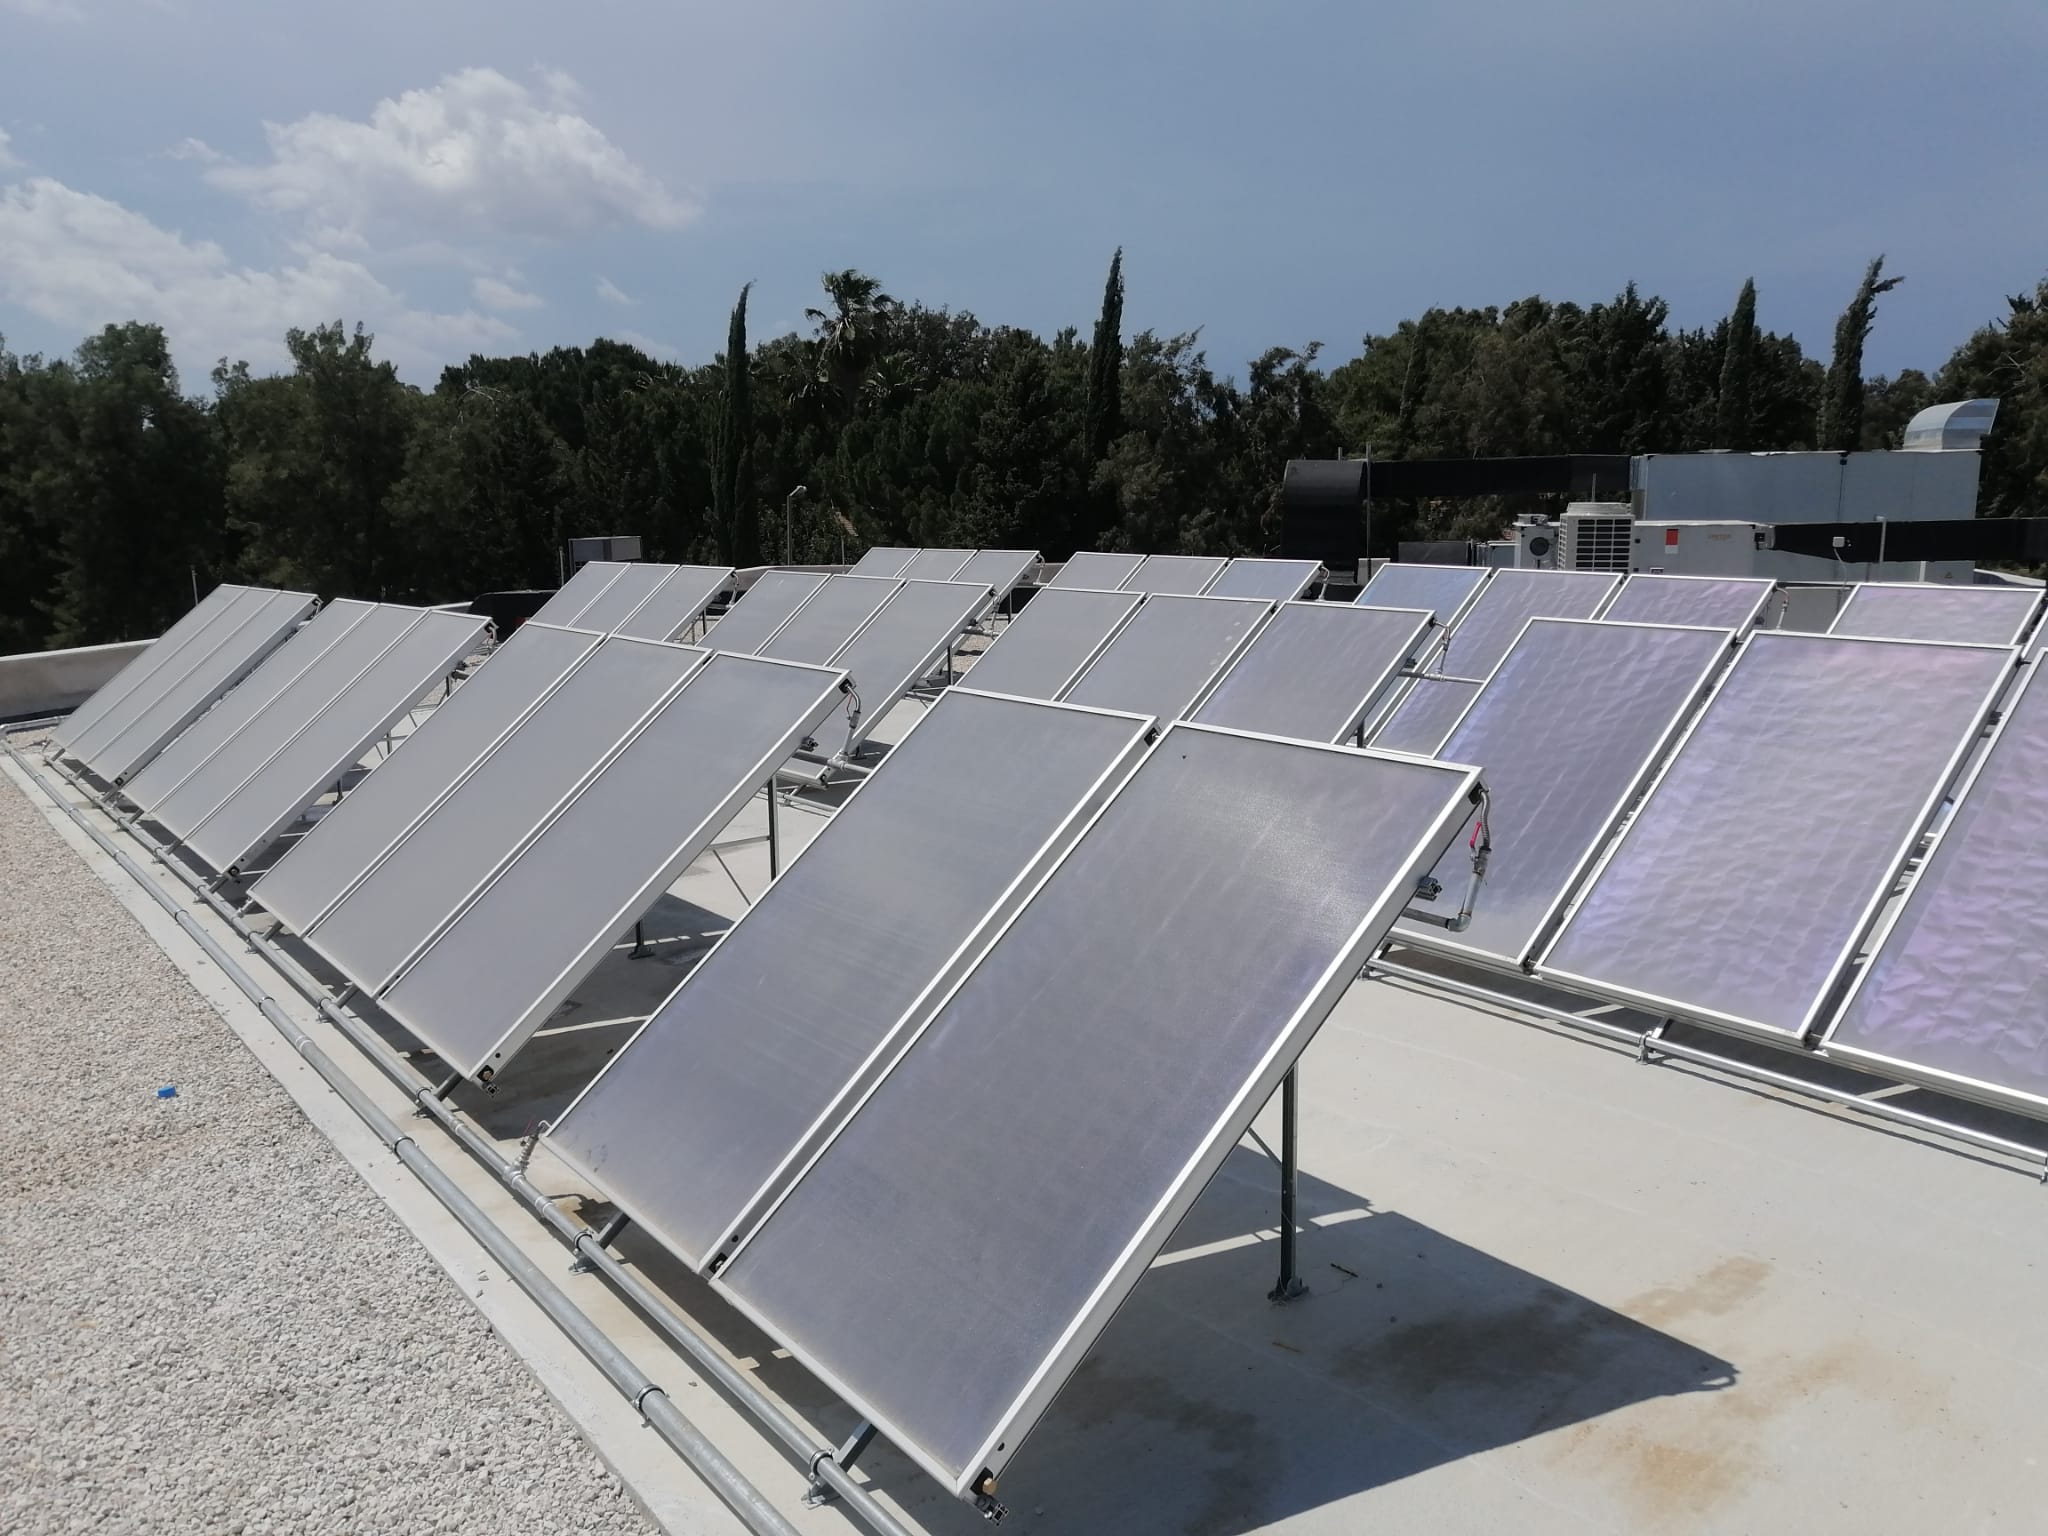 Adana İncirlik 10'uncu Tanker Üs Komutanlığı Sosyal Yaşam Merkezi Güneş Enerjisi Projesi